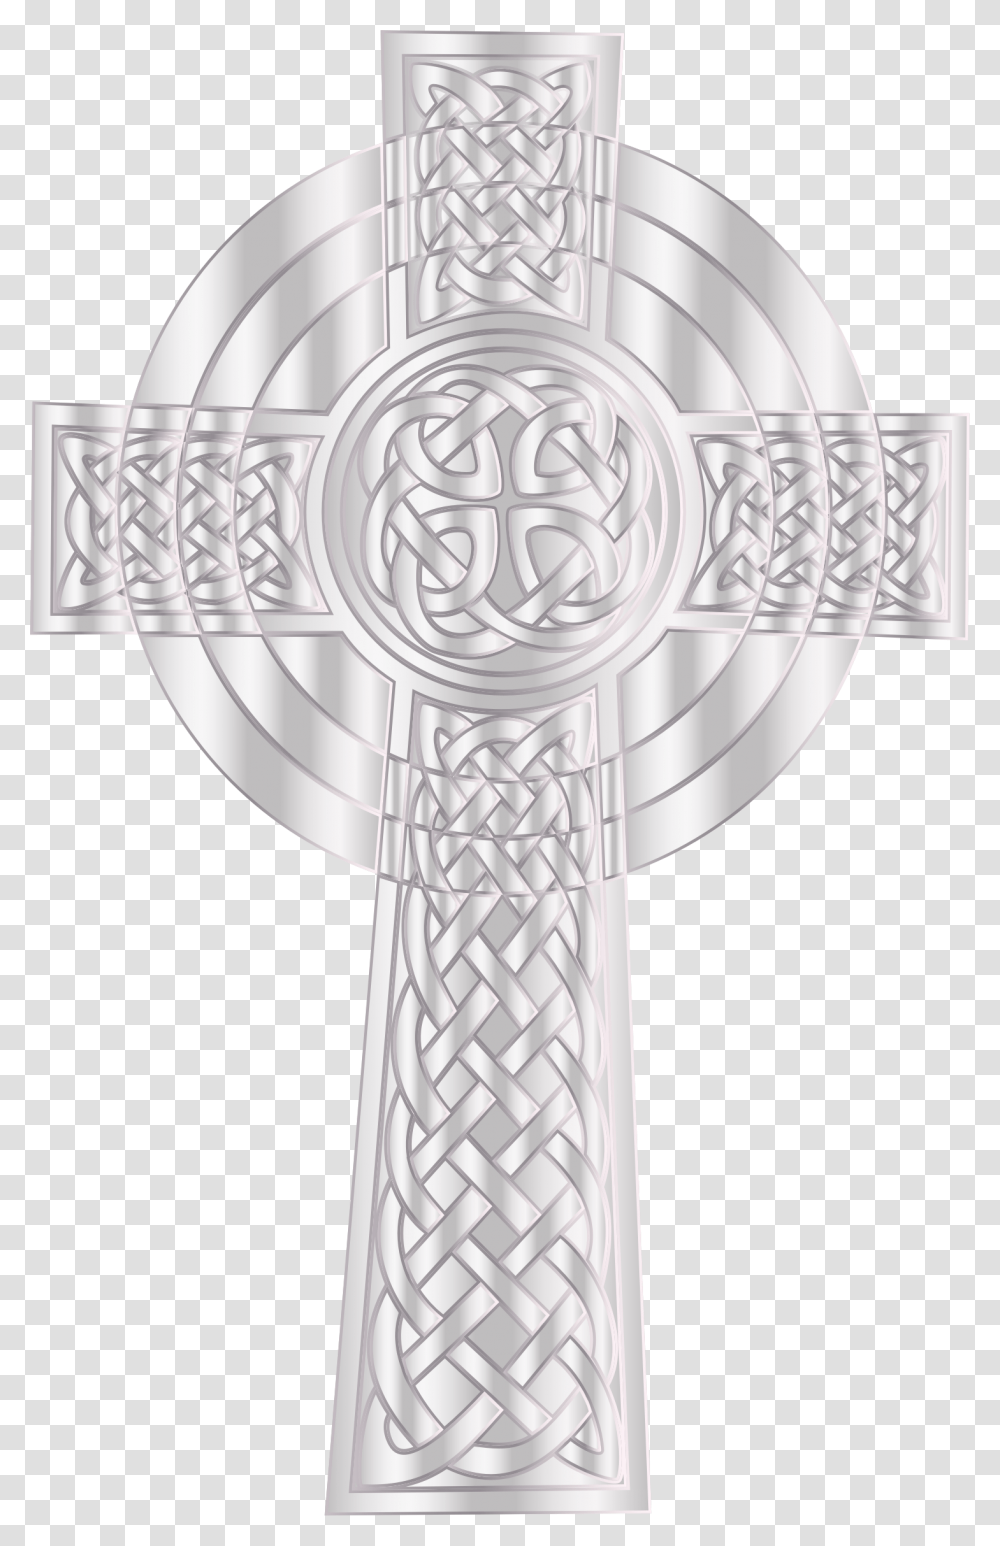 Silver Celtic Cross 2 Clip Arts Silver Cross, Trophy, Emblem, Weapon Transparent Png